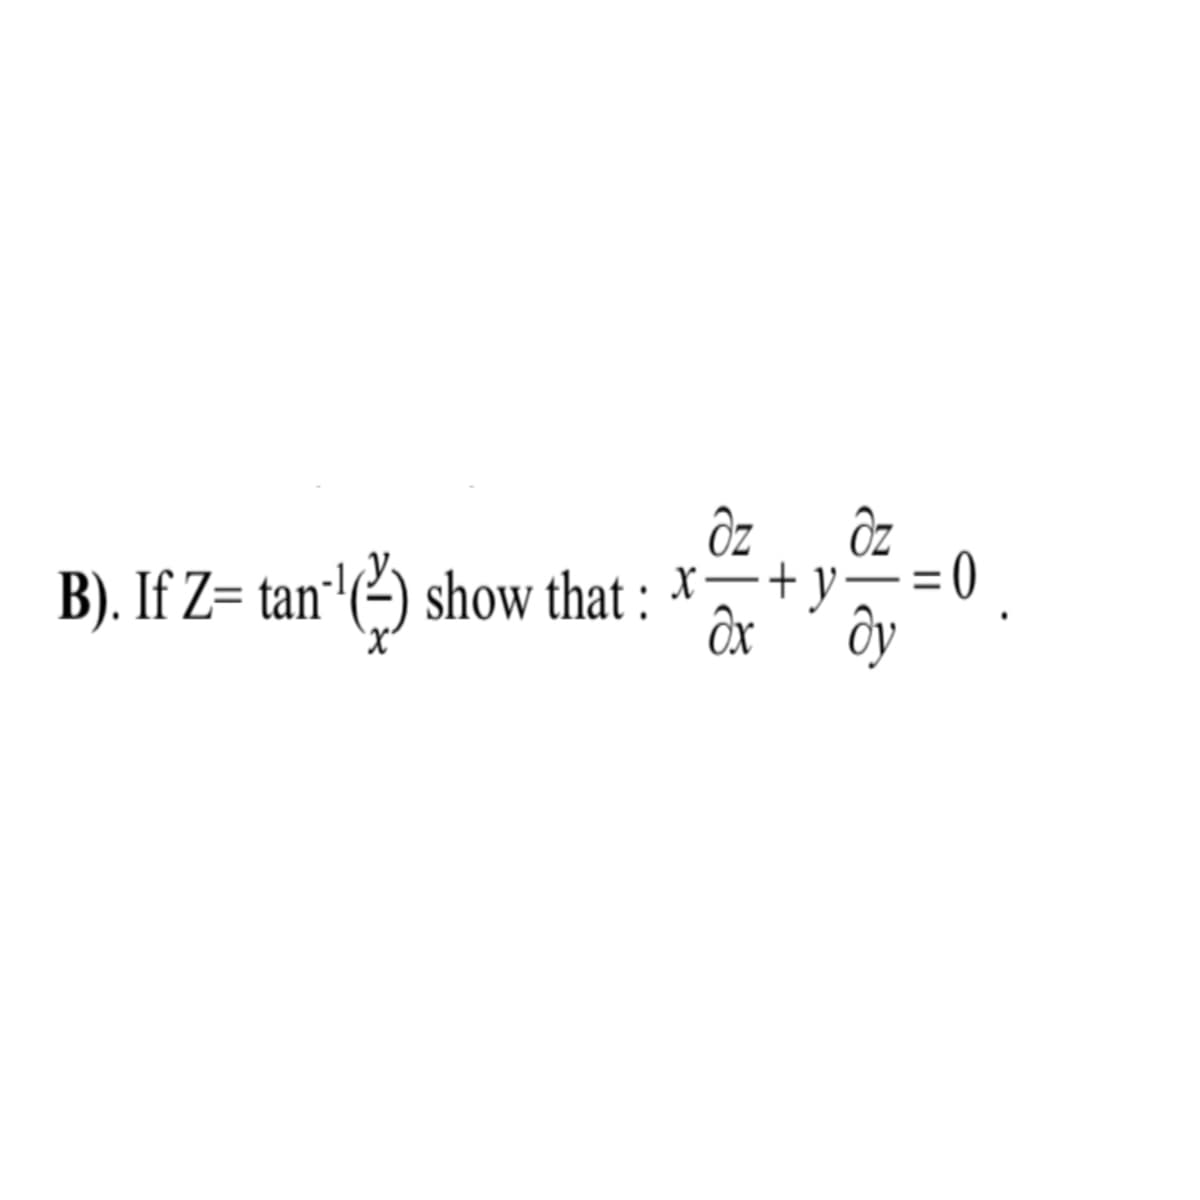 ÔZ
B). If Z= tan'(²) show that : *+y-
Ôx
ôy
